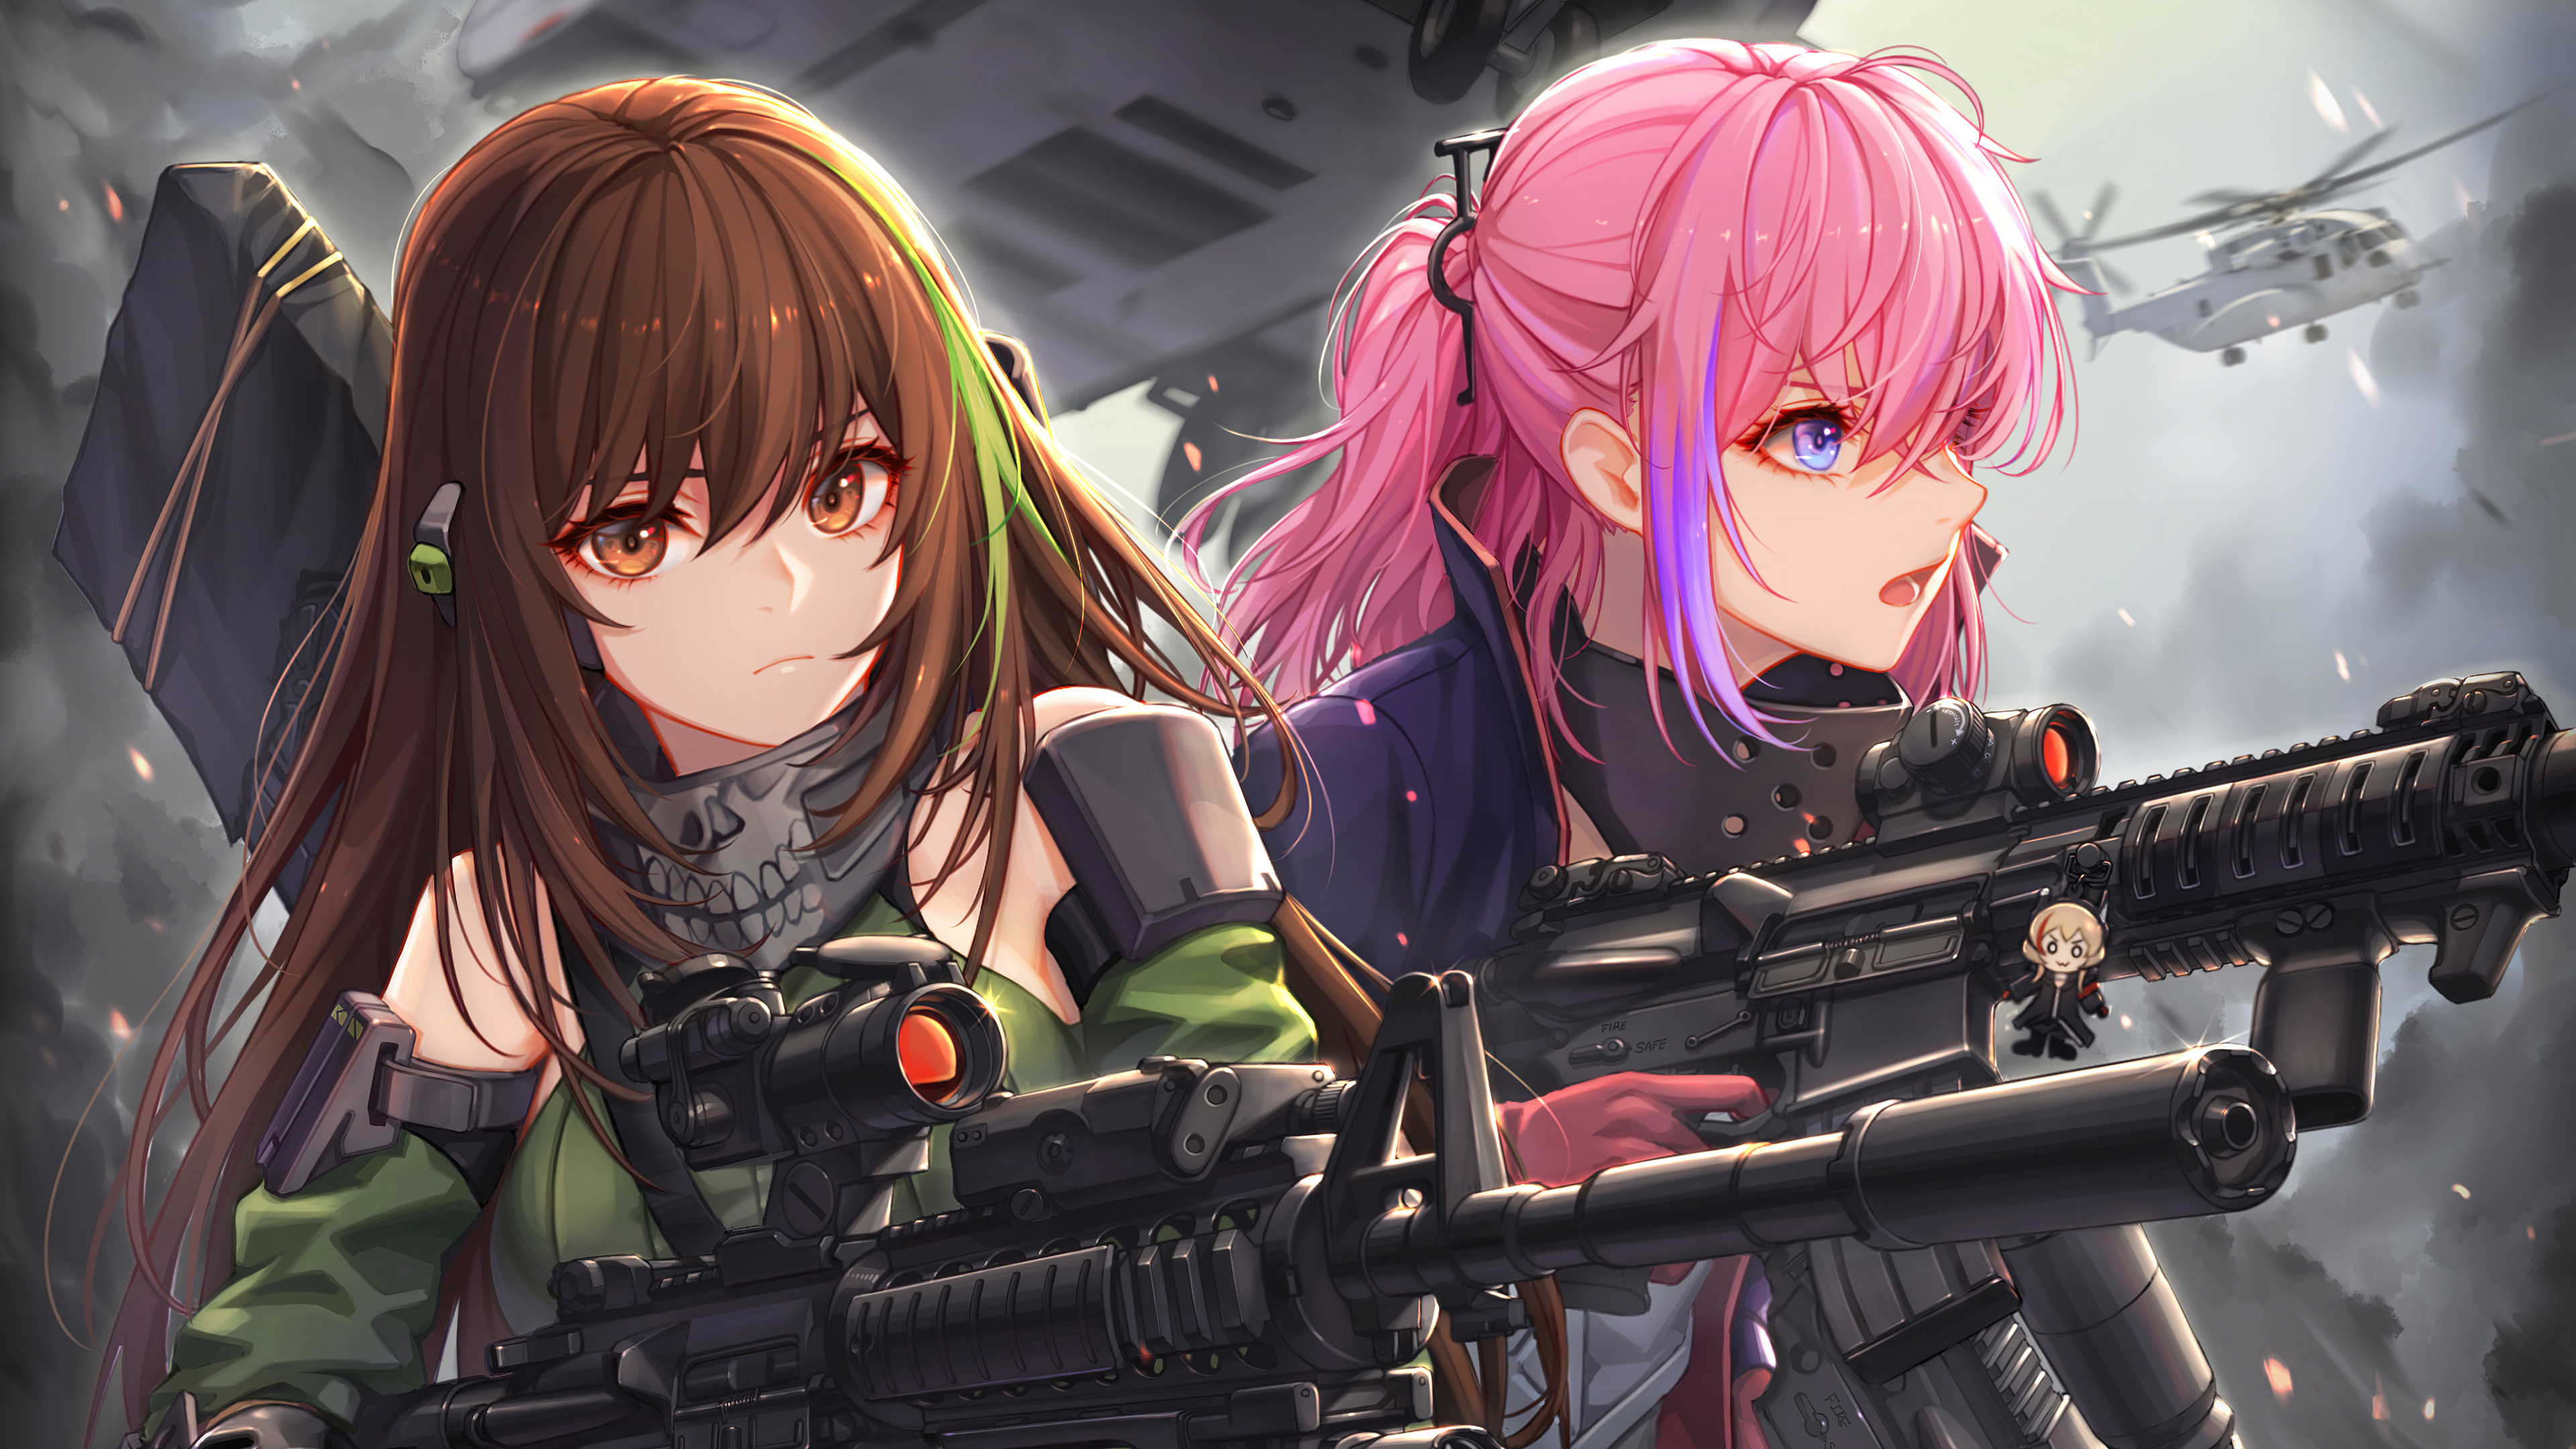 Anime Girls Frontline Wallpapers